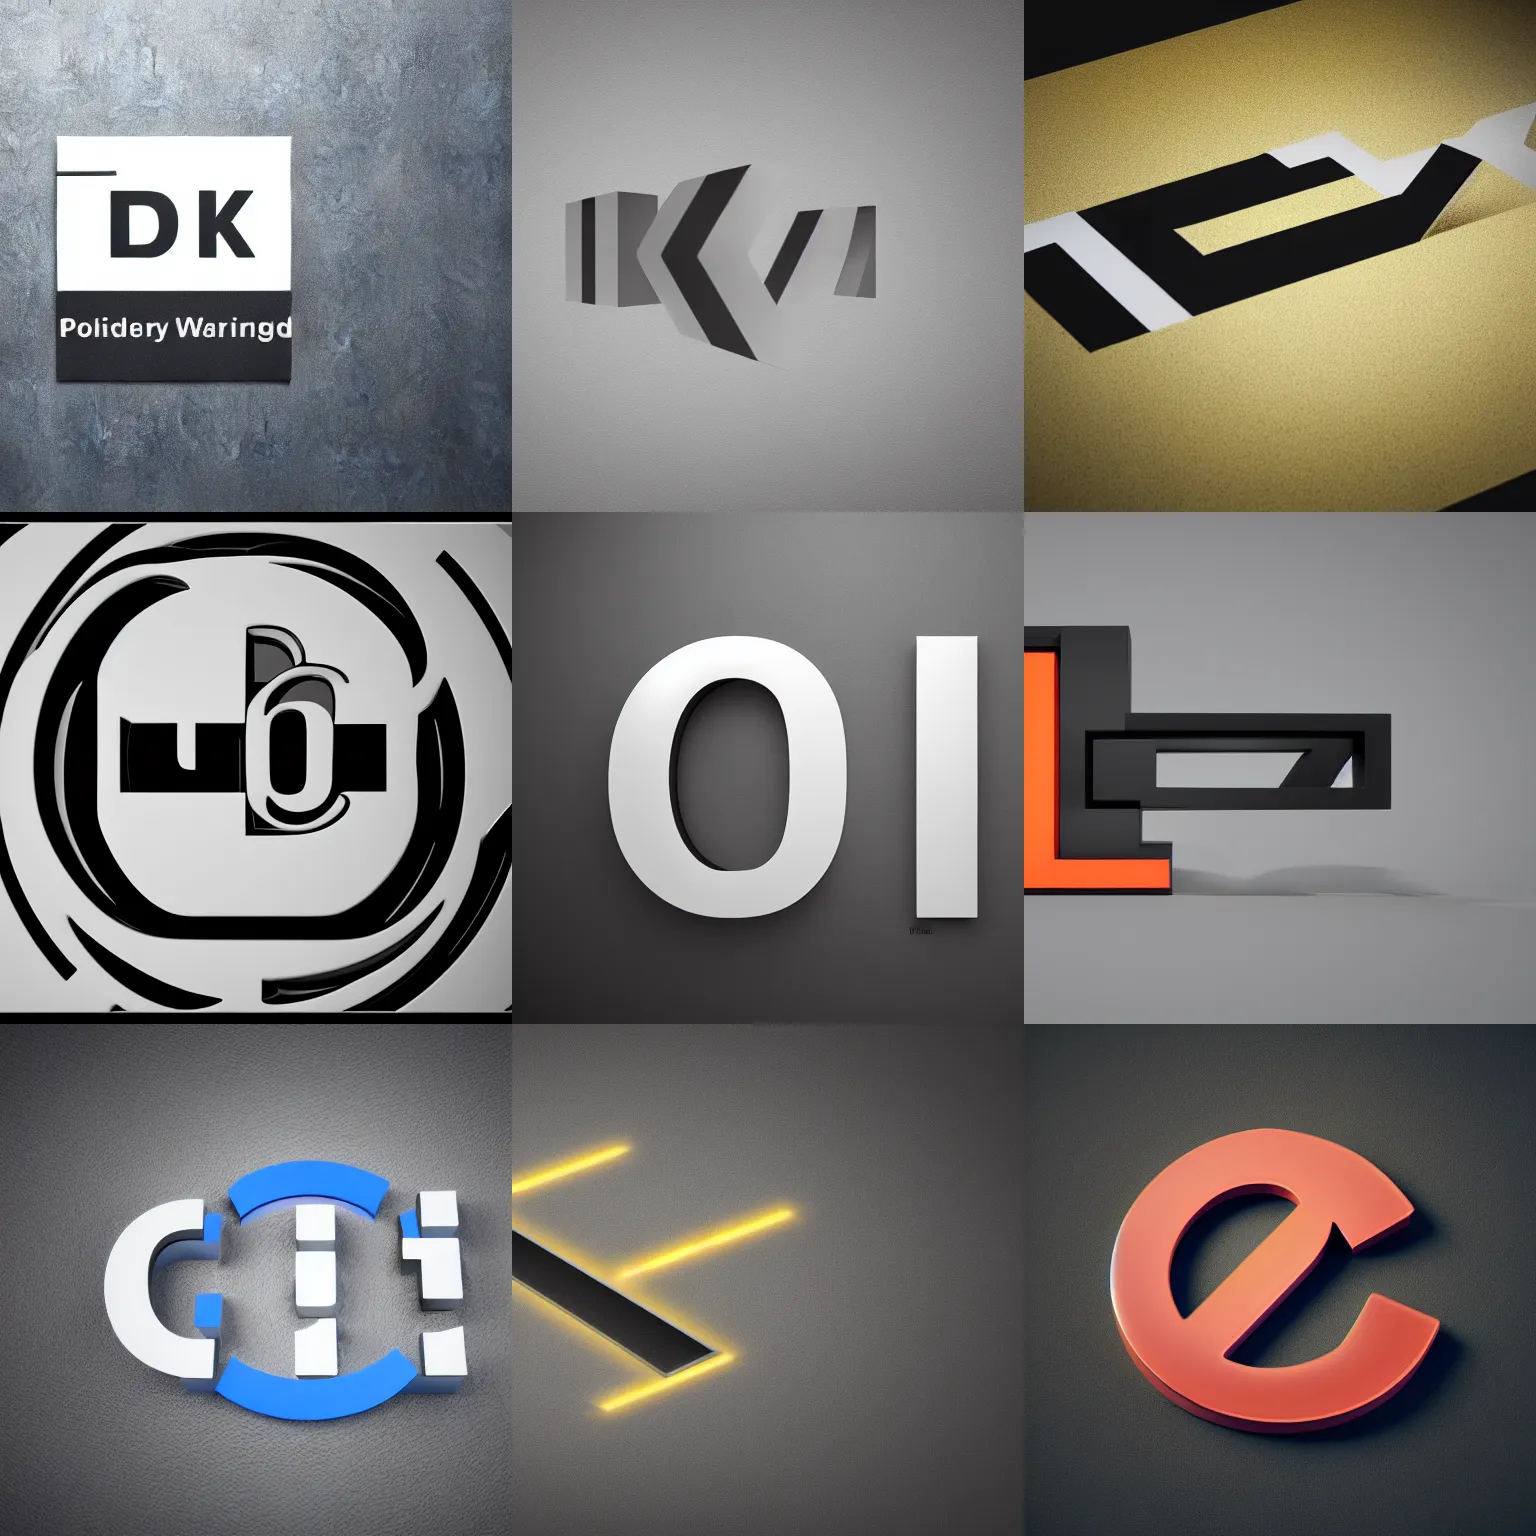 Dk logo 3D | Dk logo, Friendship quotes images, Instagram profile pic